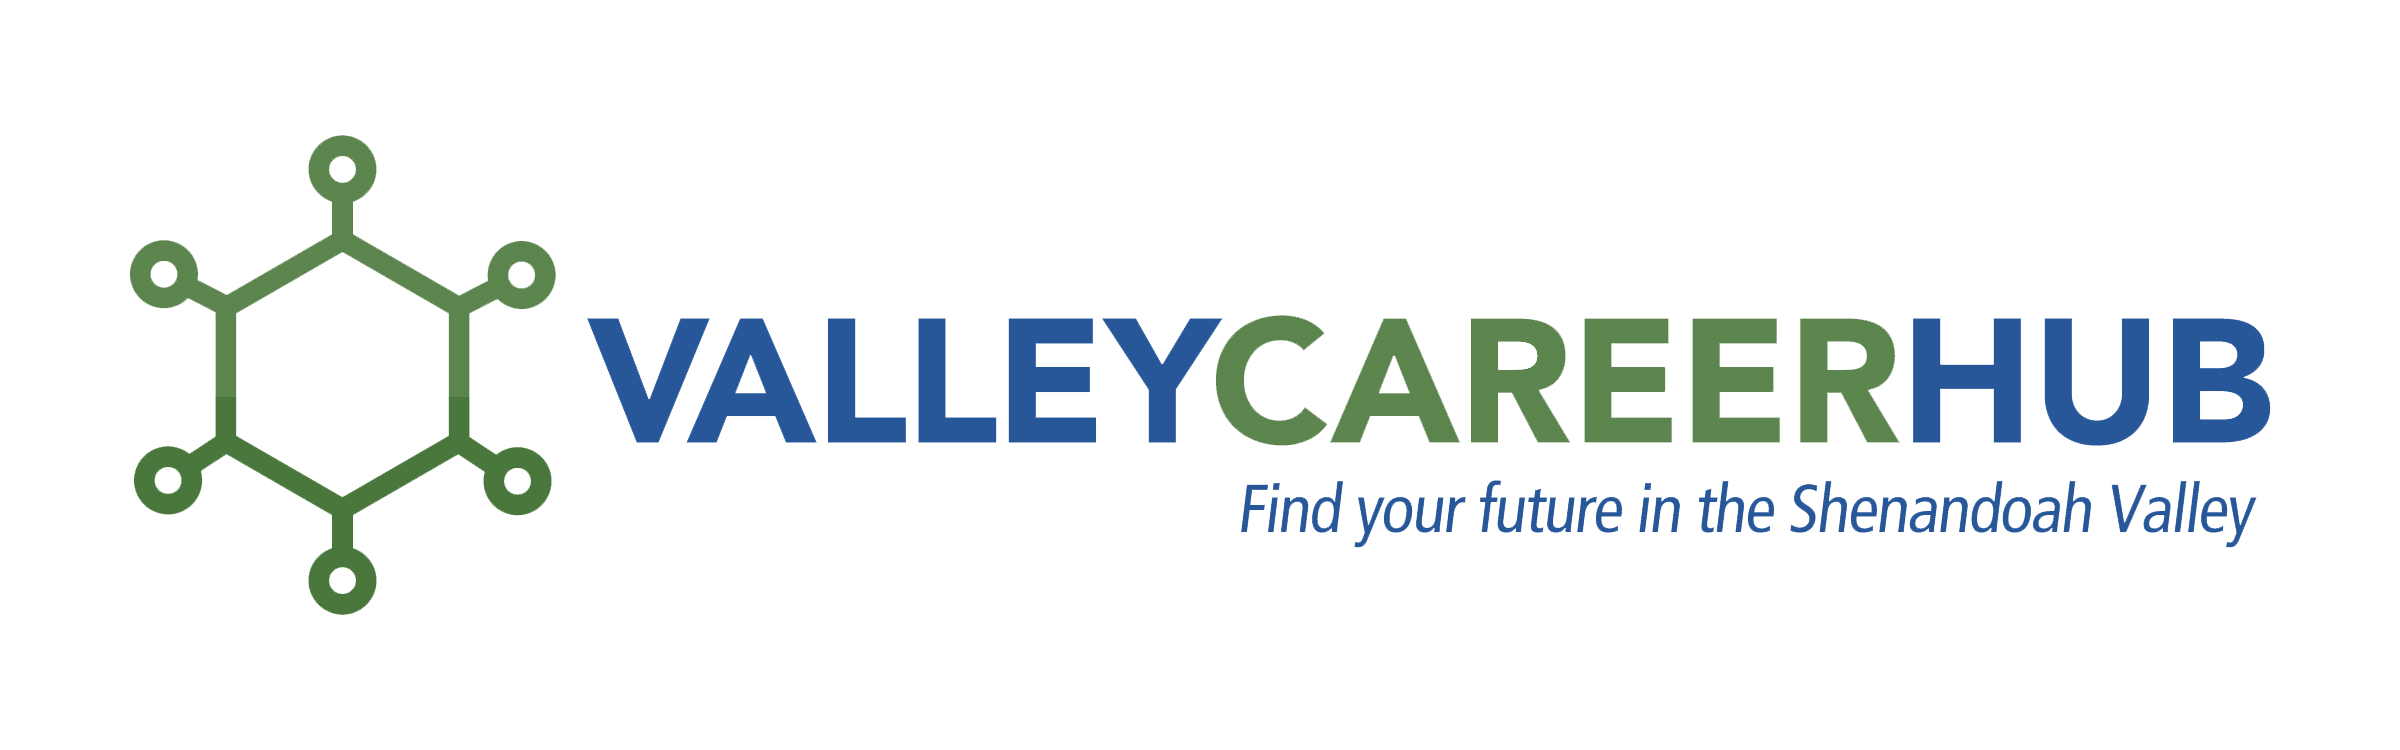 Valley Career hub logo